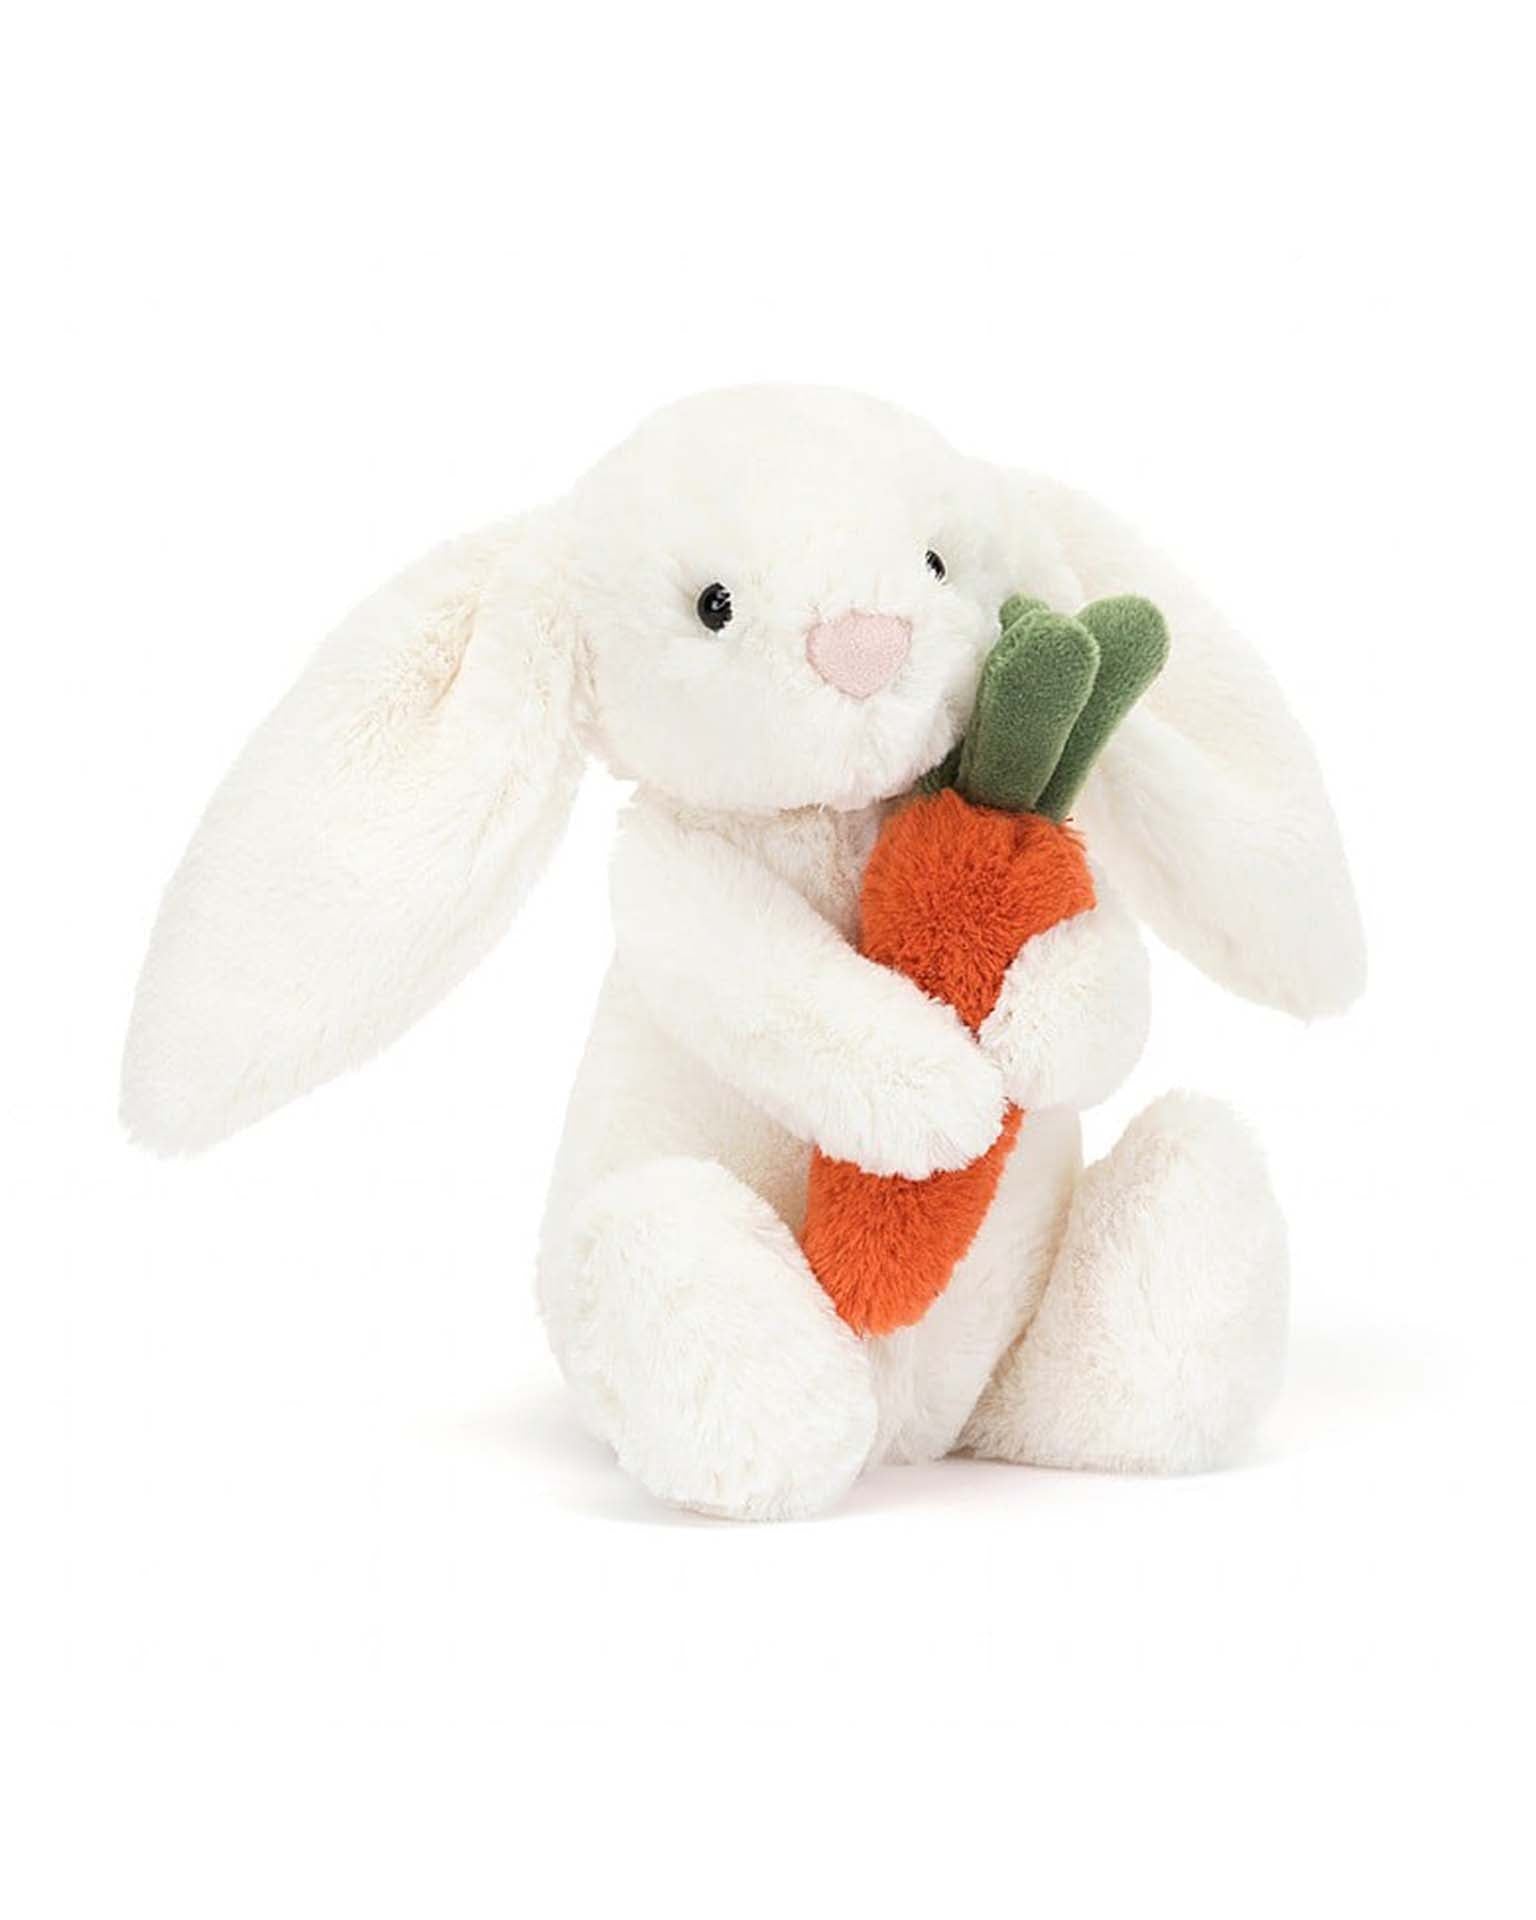 Little Jellycat play bashful carrot bunny little